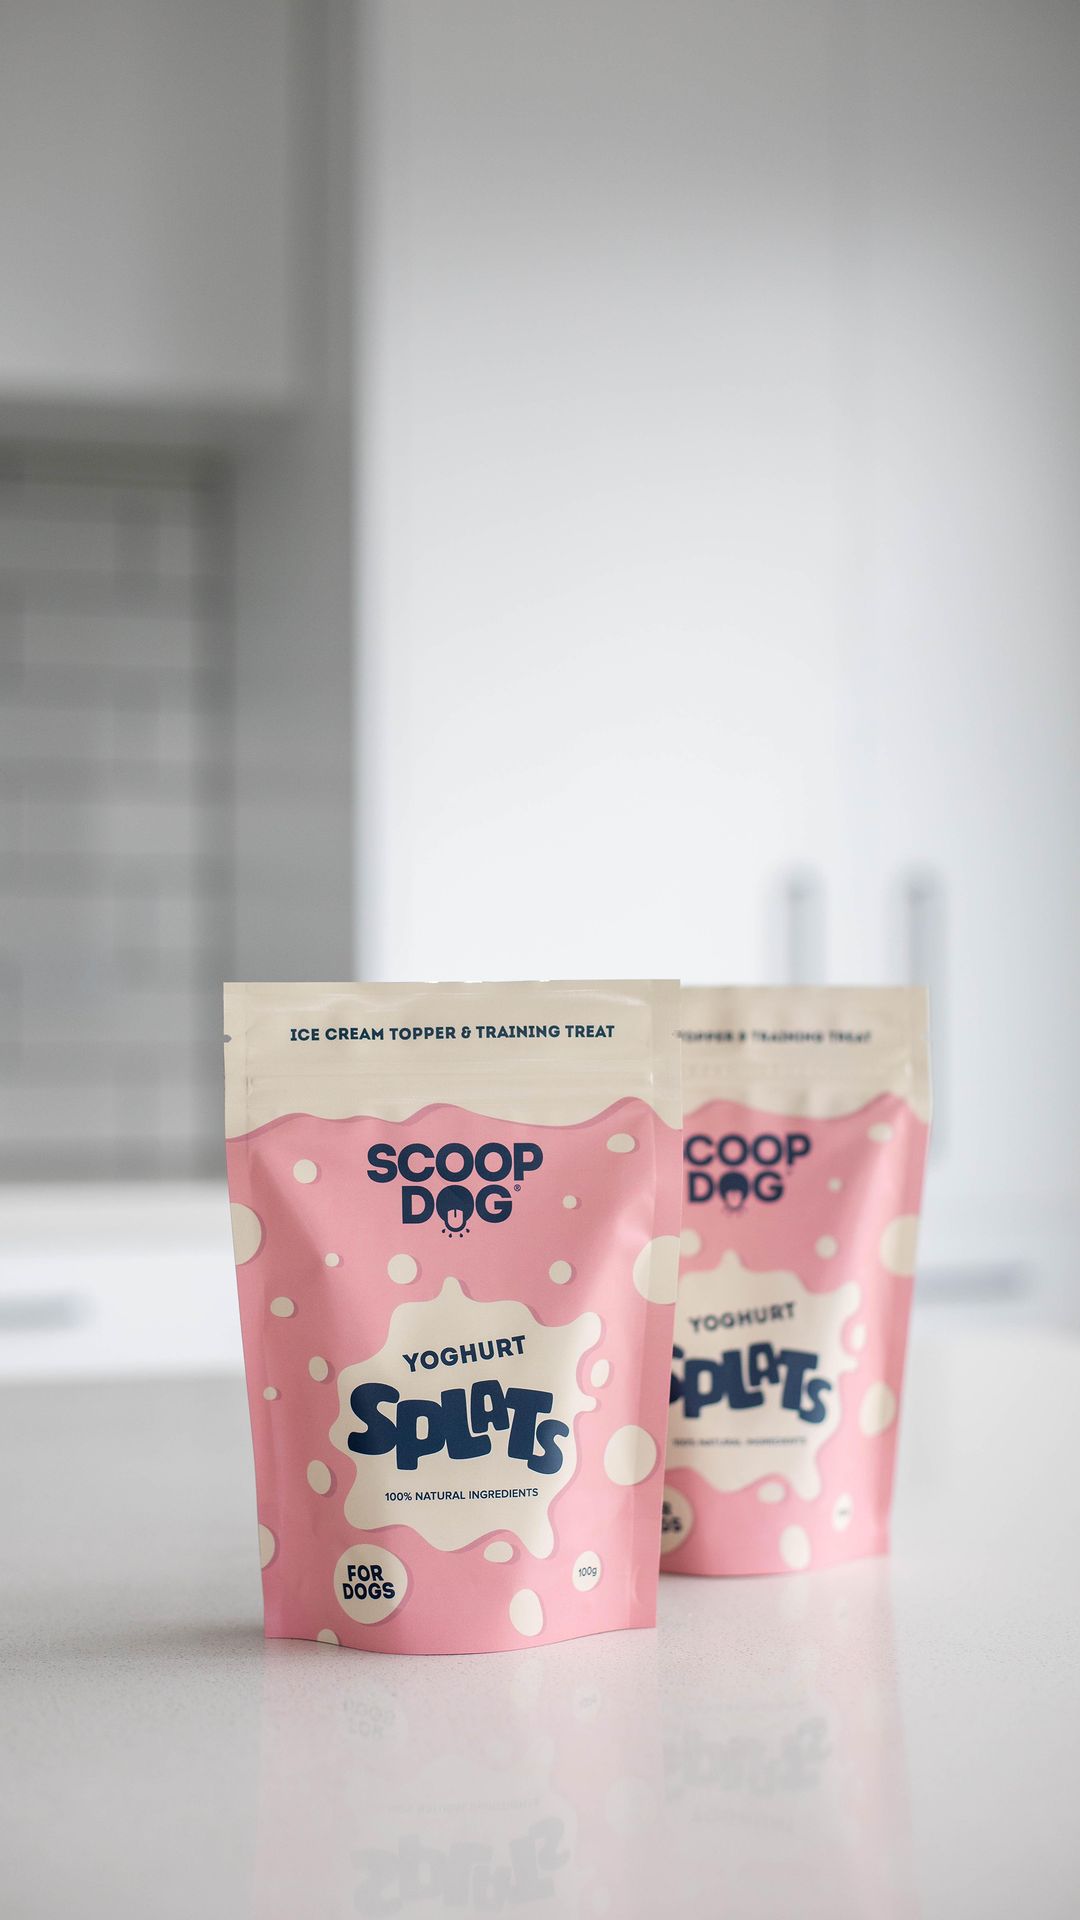 Yoghurt Splats - Scoop Dog  